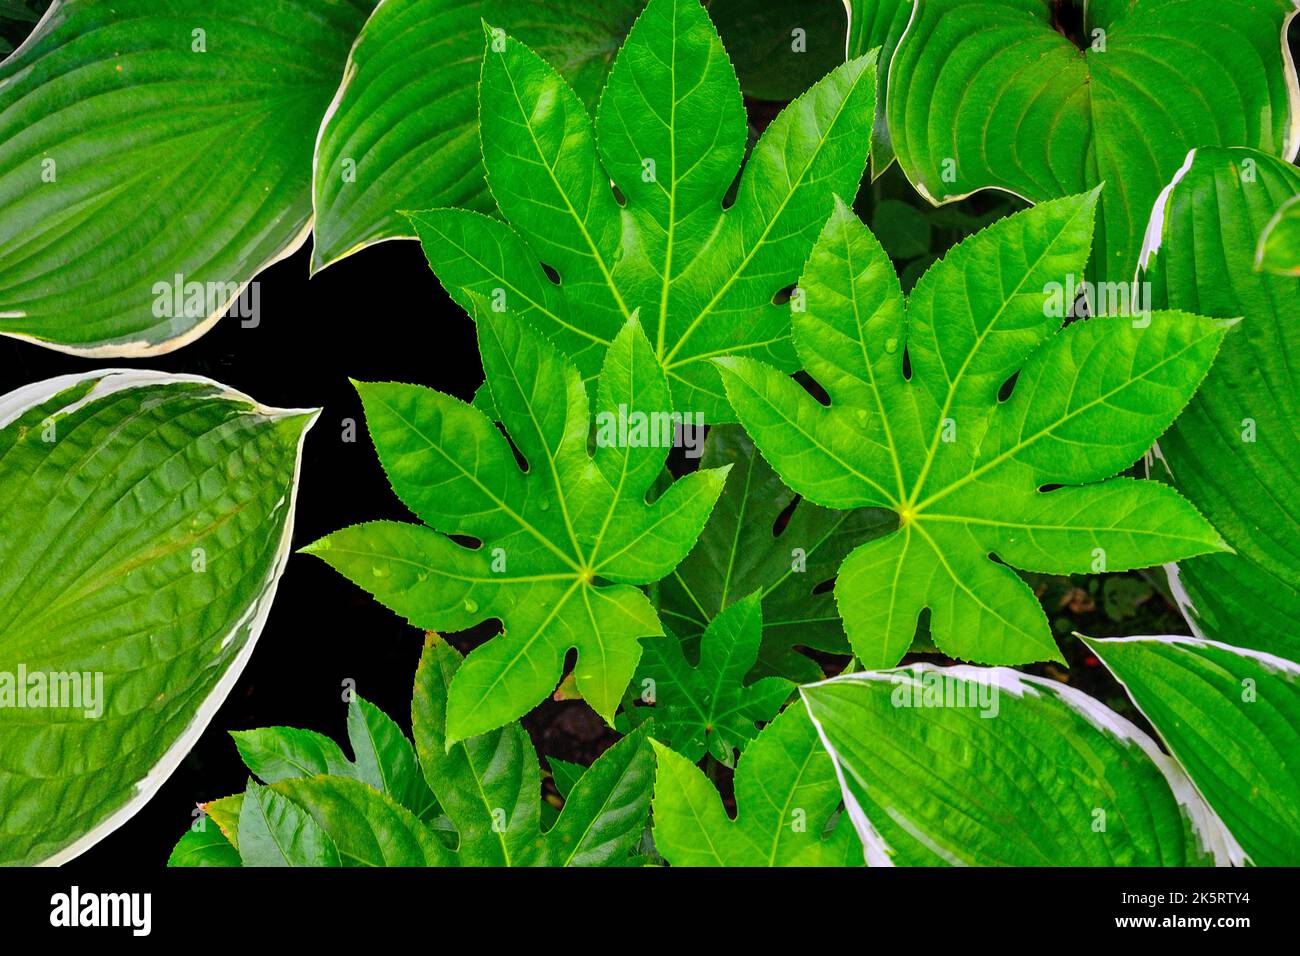 Glänzende, geschnitzte Blätter von Fatsia Japanica, japanische Aralia oder Hochglanzpapier-Pflanze unter den Blättern von Wirten - eine exotische Gartendekoration. Gartenarbeit, l Stockfoto